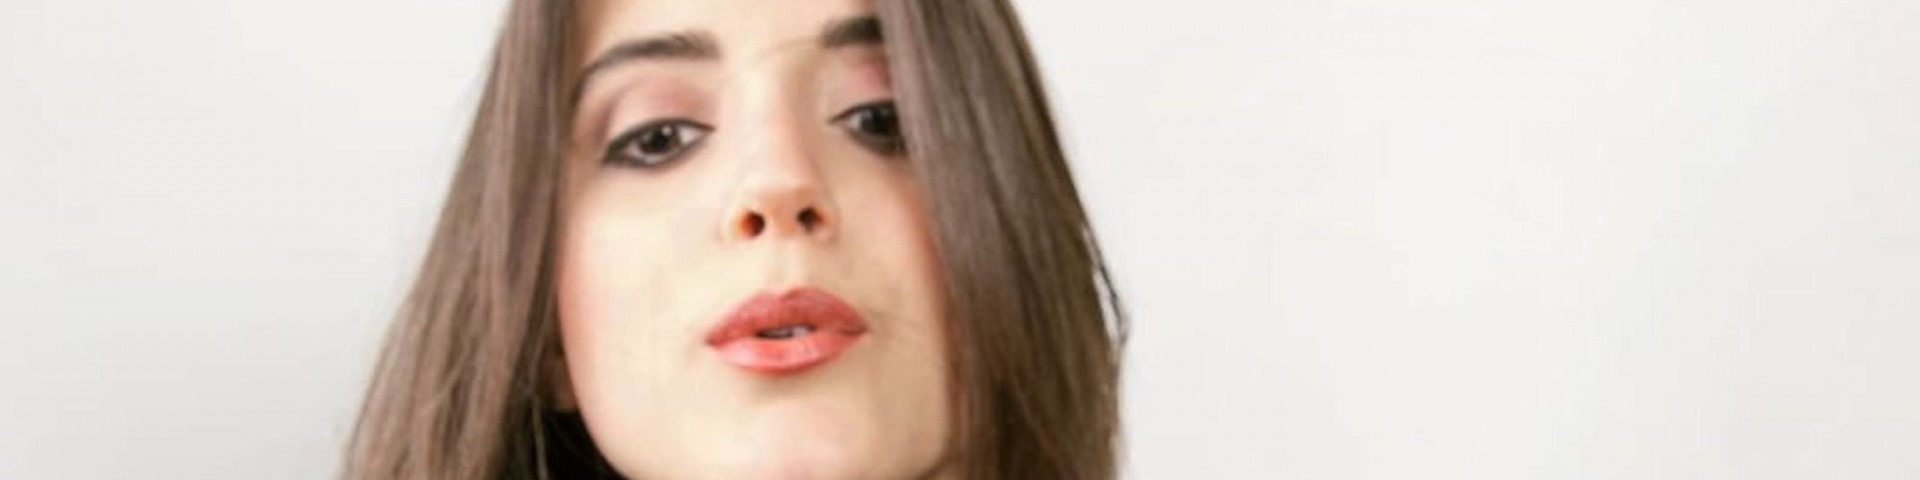 Greta Zuccoli a Sanremo Giovani: “Voglio concedermi alle mie emozioni senza paure” (Video)